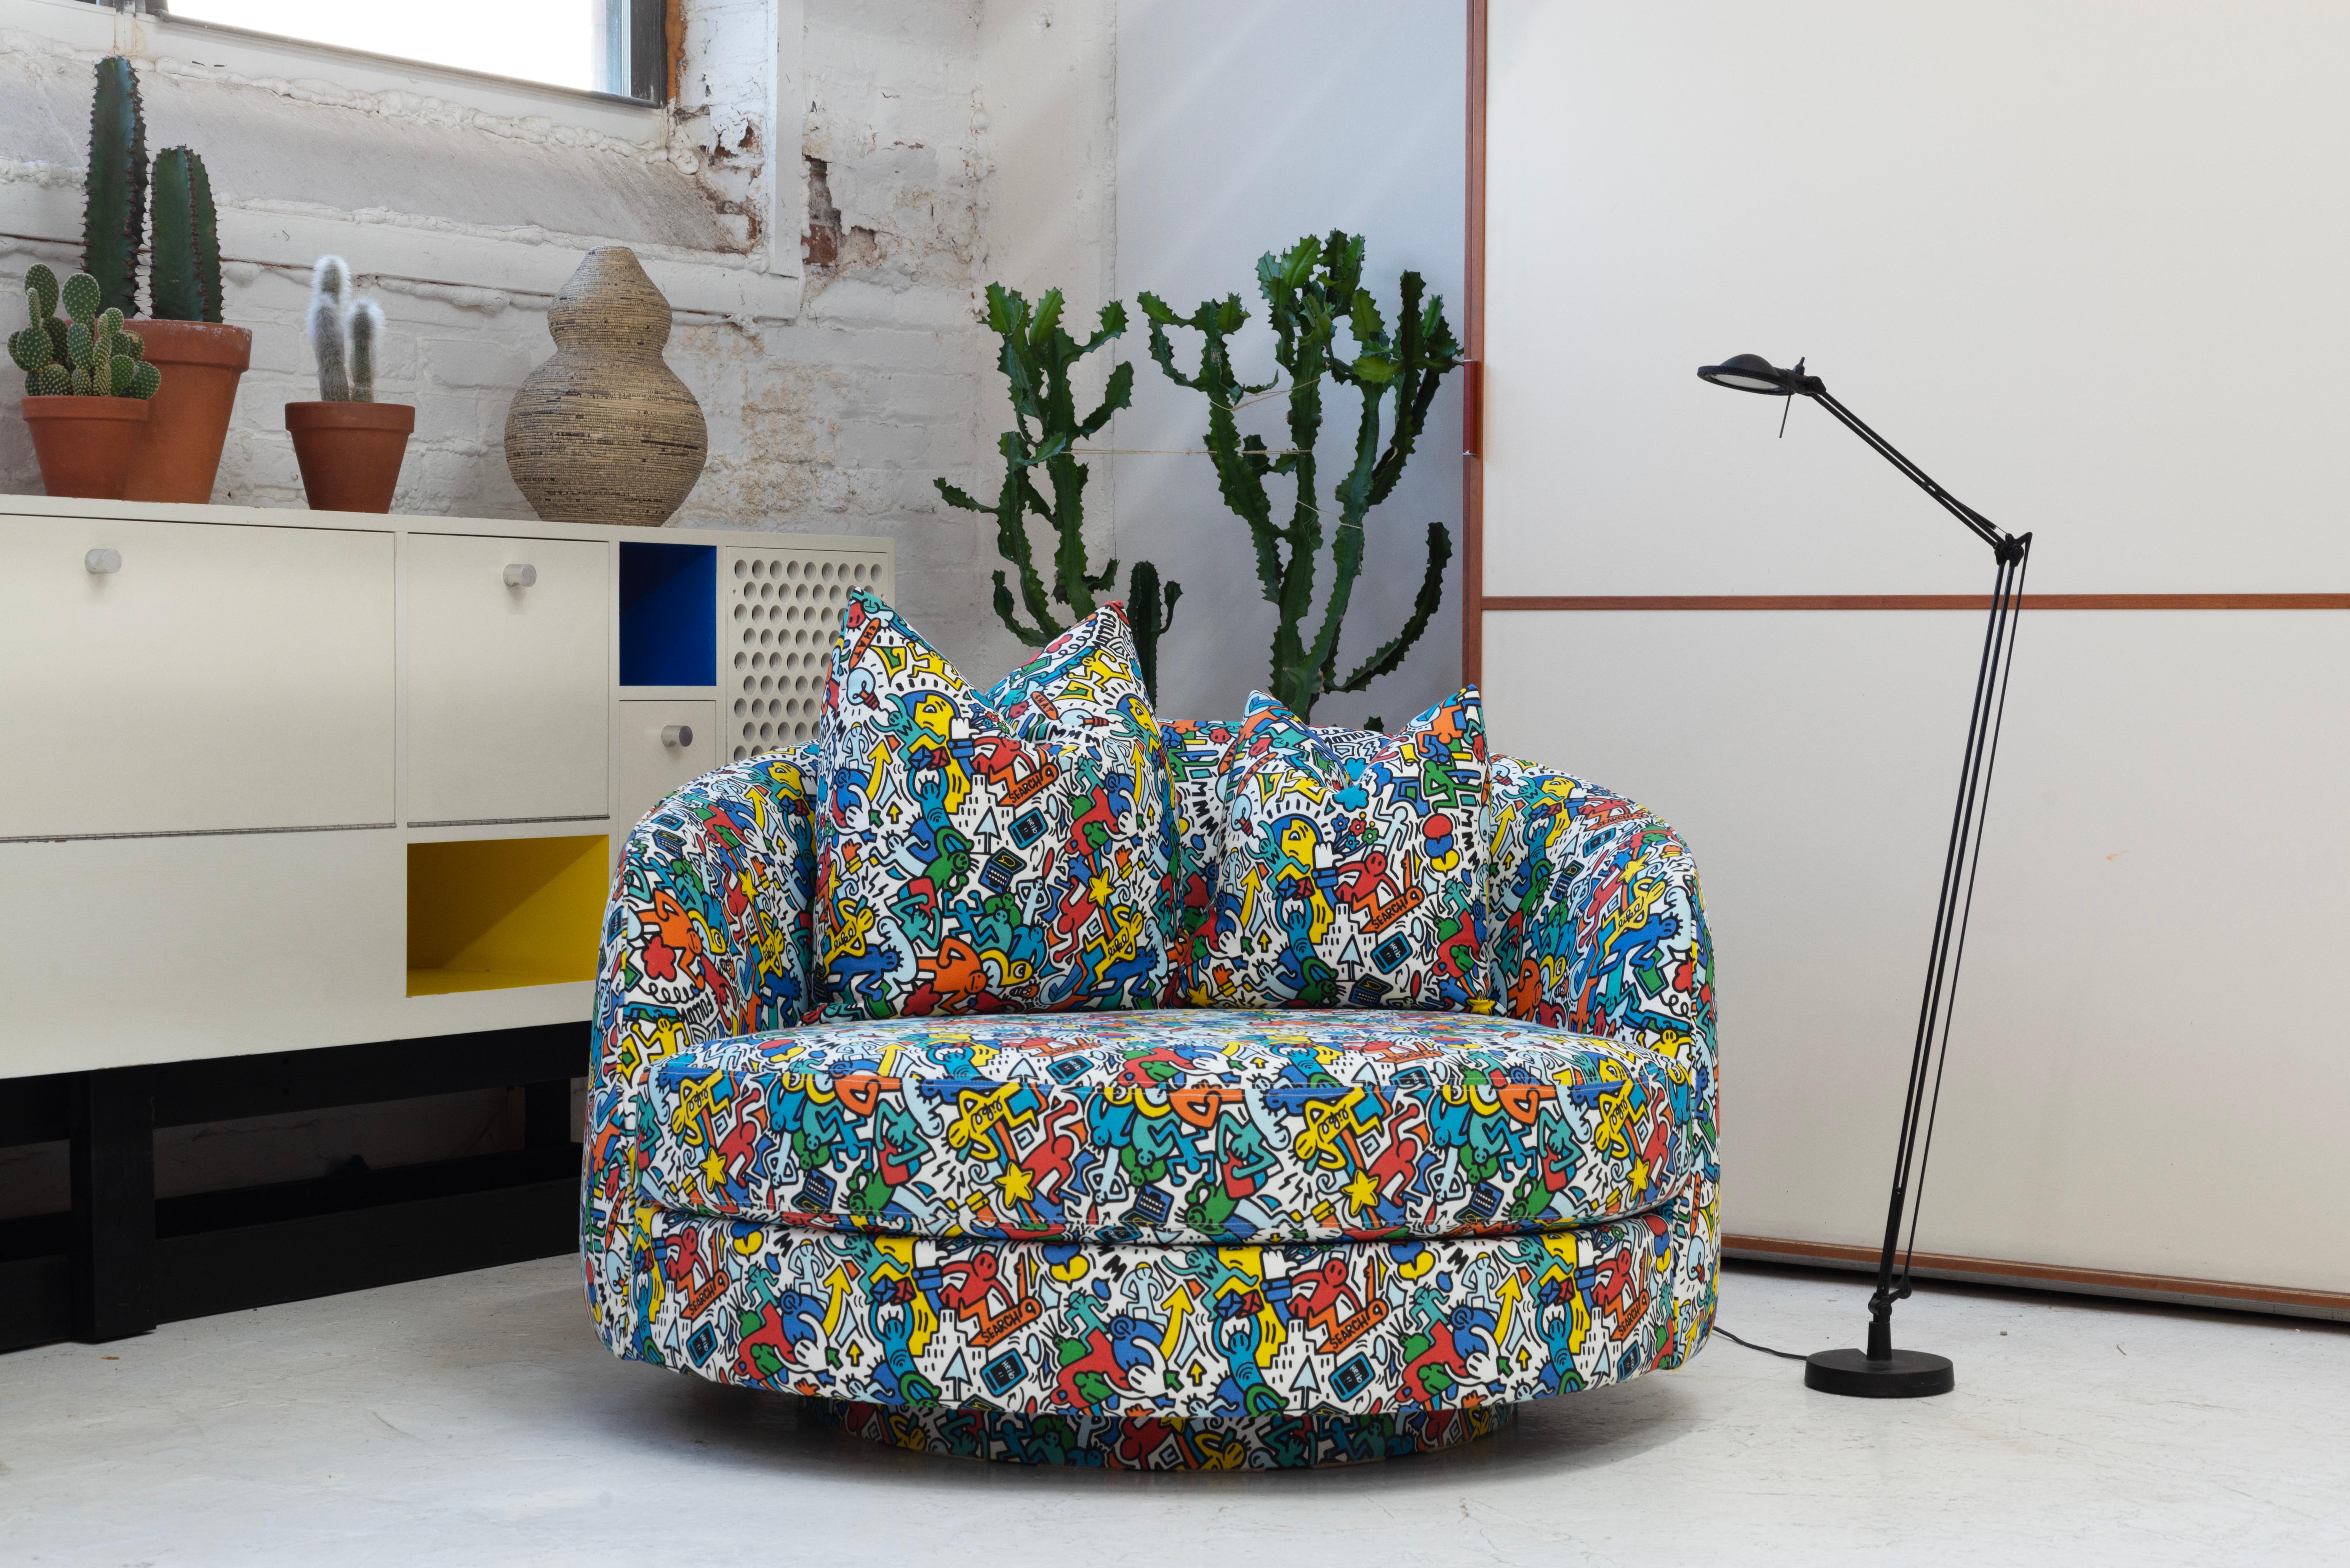 Gepolstert mit neuem Schaumstoff in Keith Haring Style Fabric made in Spain. Der Stuhl ist um 360 Grad drehbar und mit zwei Daunenkissen ausgestattet.